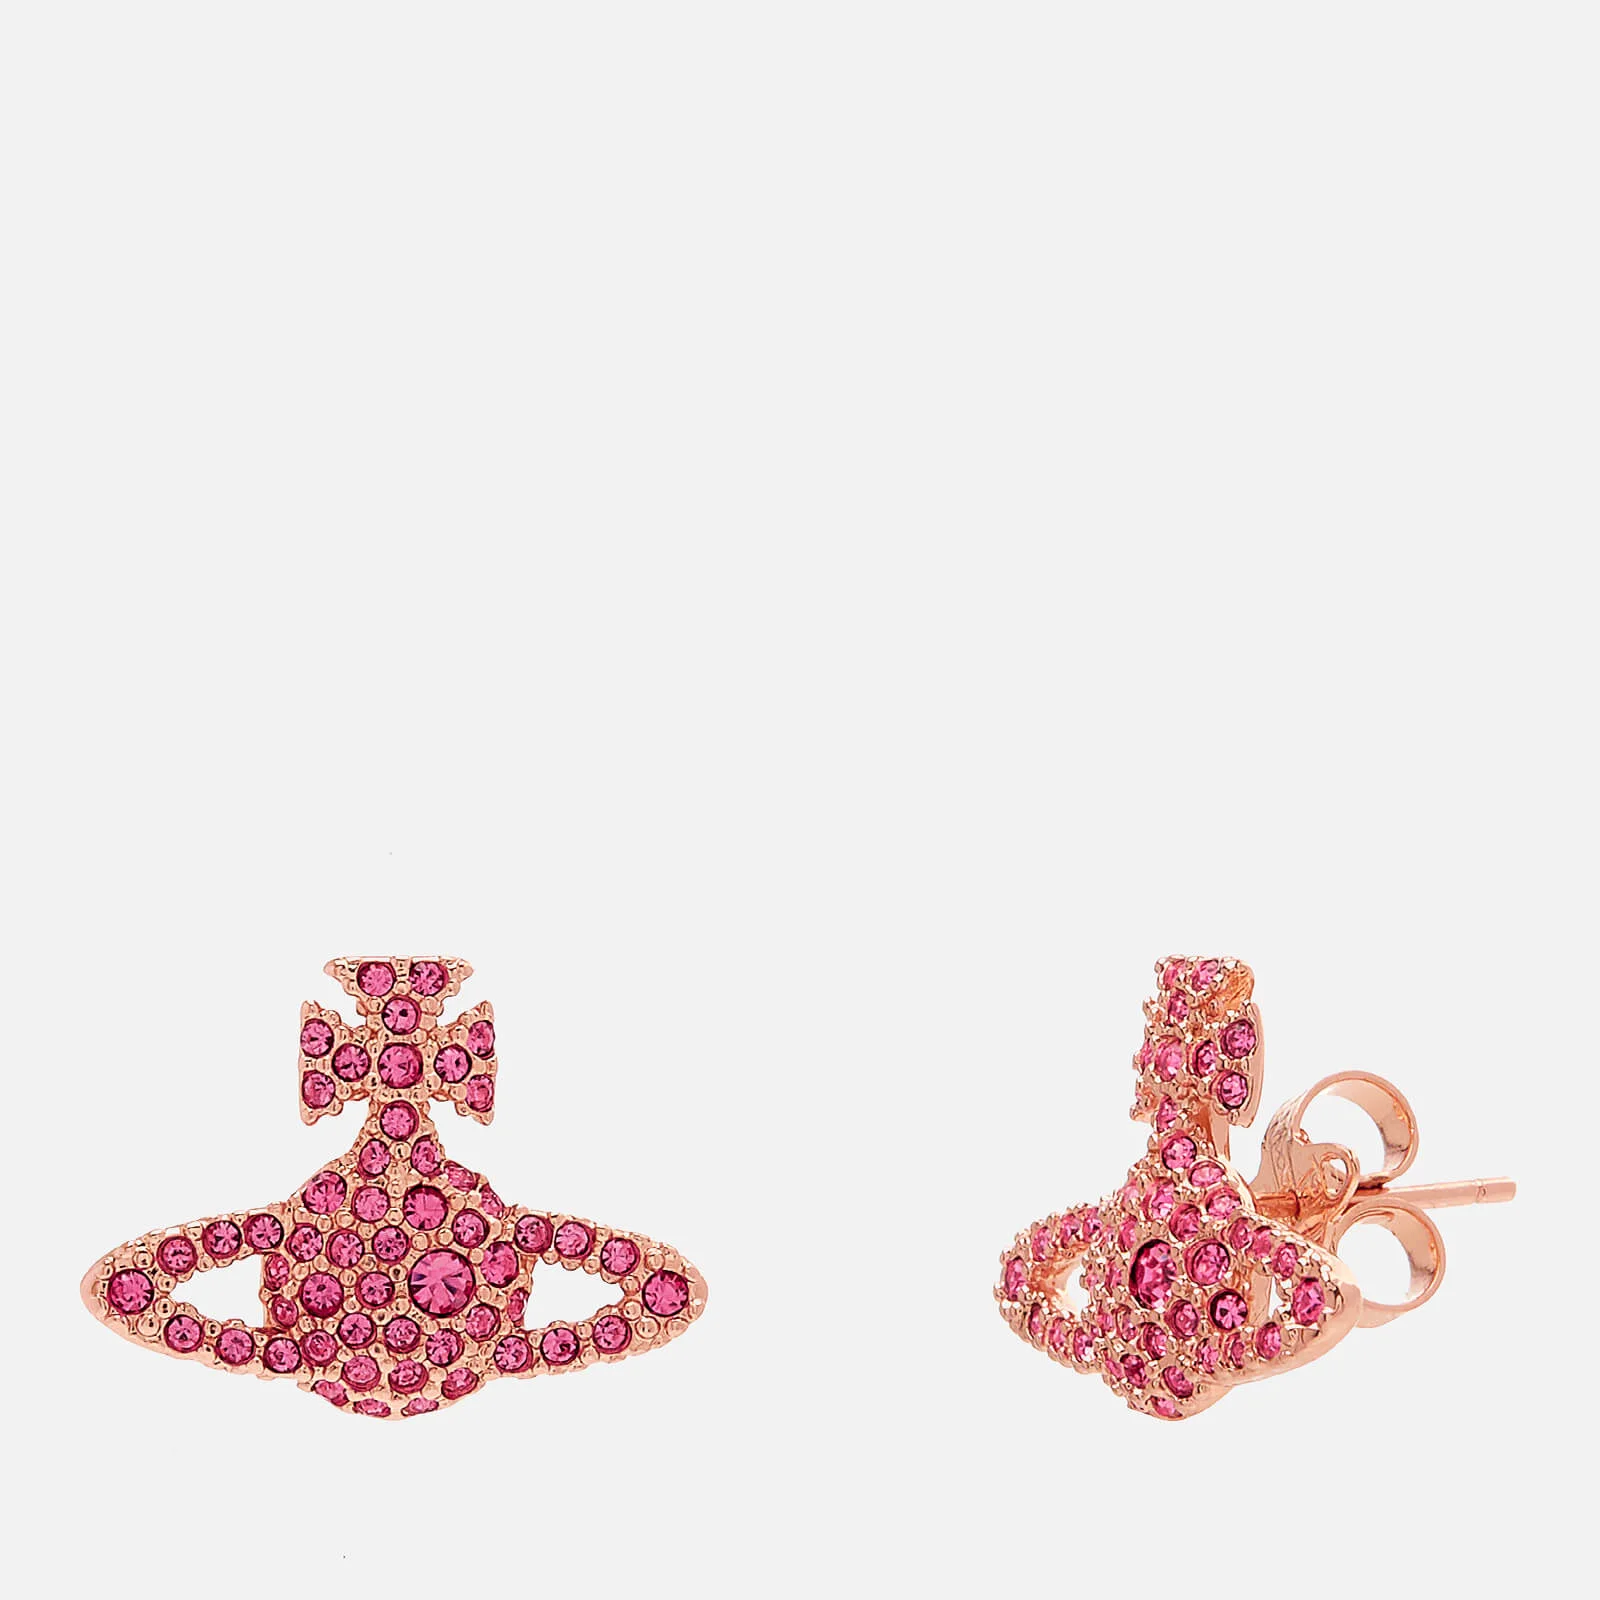 Vivienne Westwood Women's Grace Br Stud Earrings - Rose Crystal Image 1